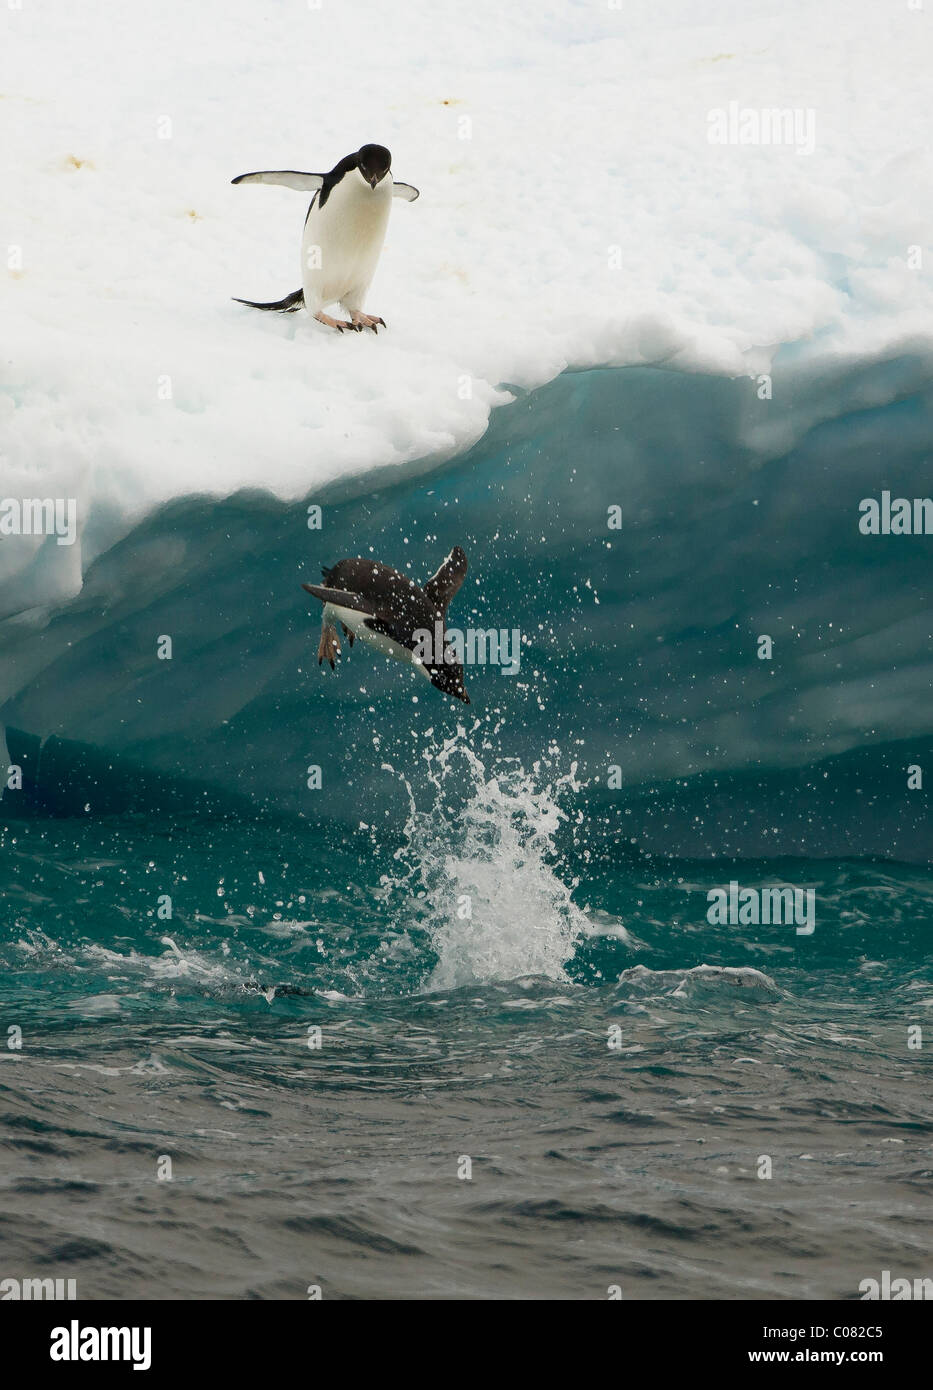 Adelie Penguin plongée sous-marine au large de banquise, Péninsule Antarctique, l'île Paulet Banque D'Images